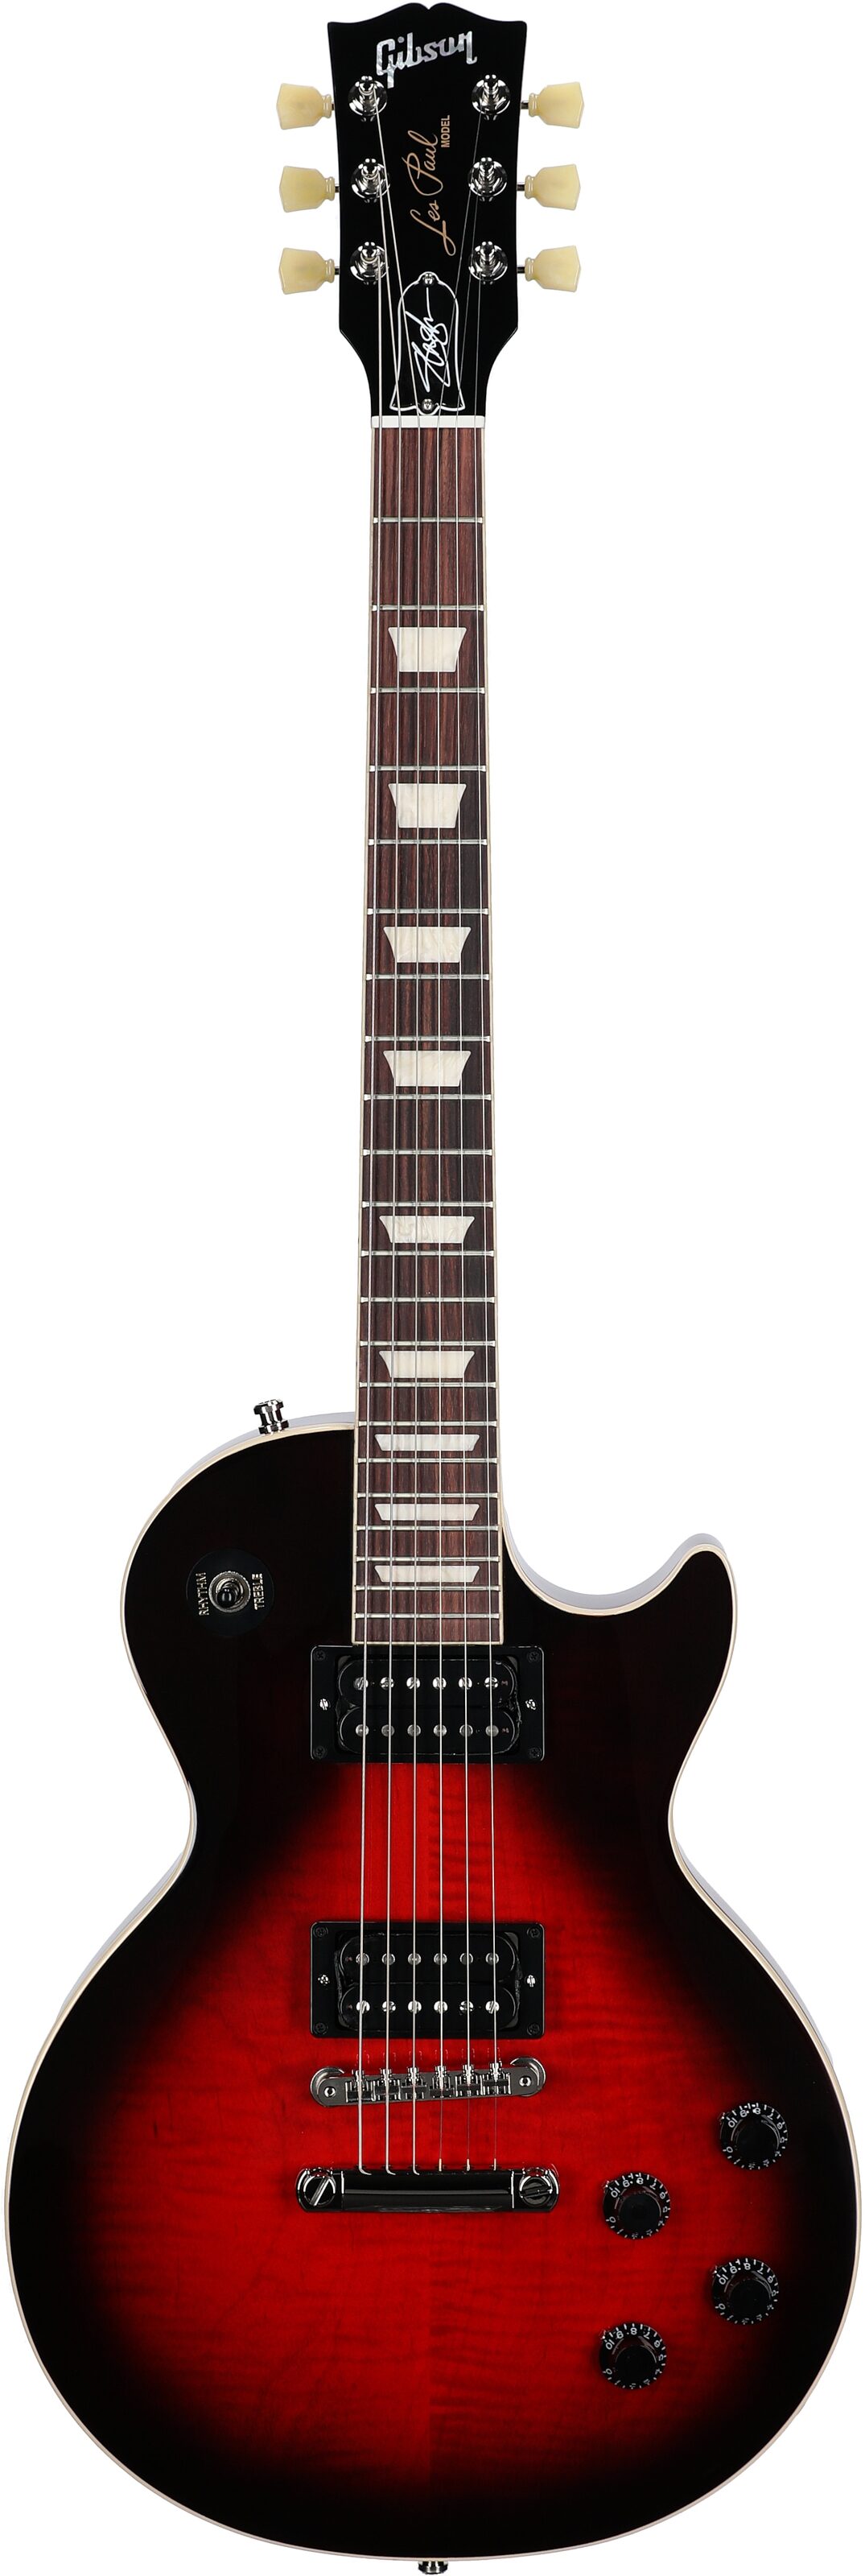 Gibson Slash Les Paul Standard Electric Guitar w/ Case (Vermillion